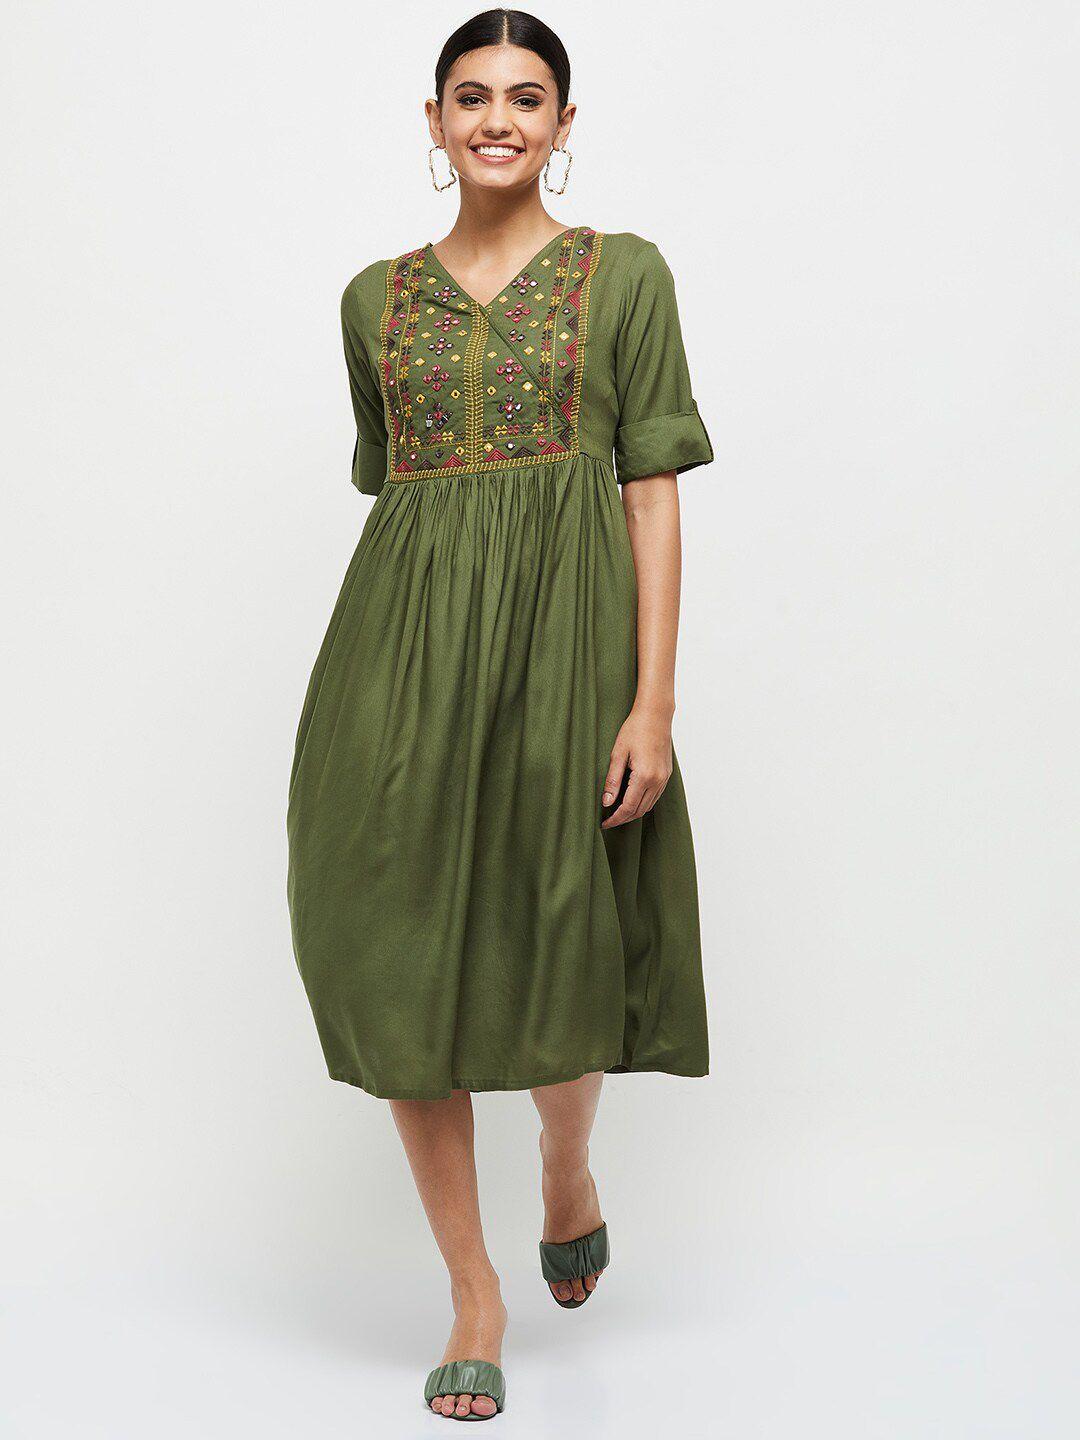 max olive green a-line midi dress